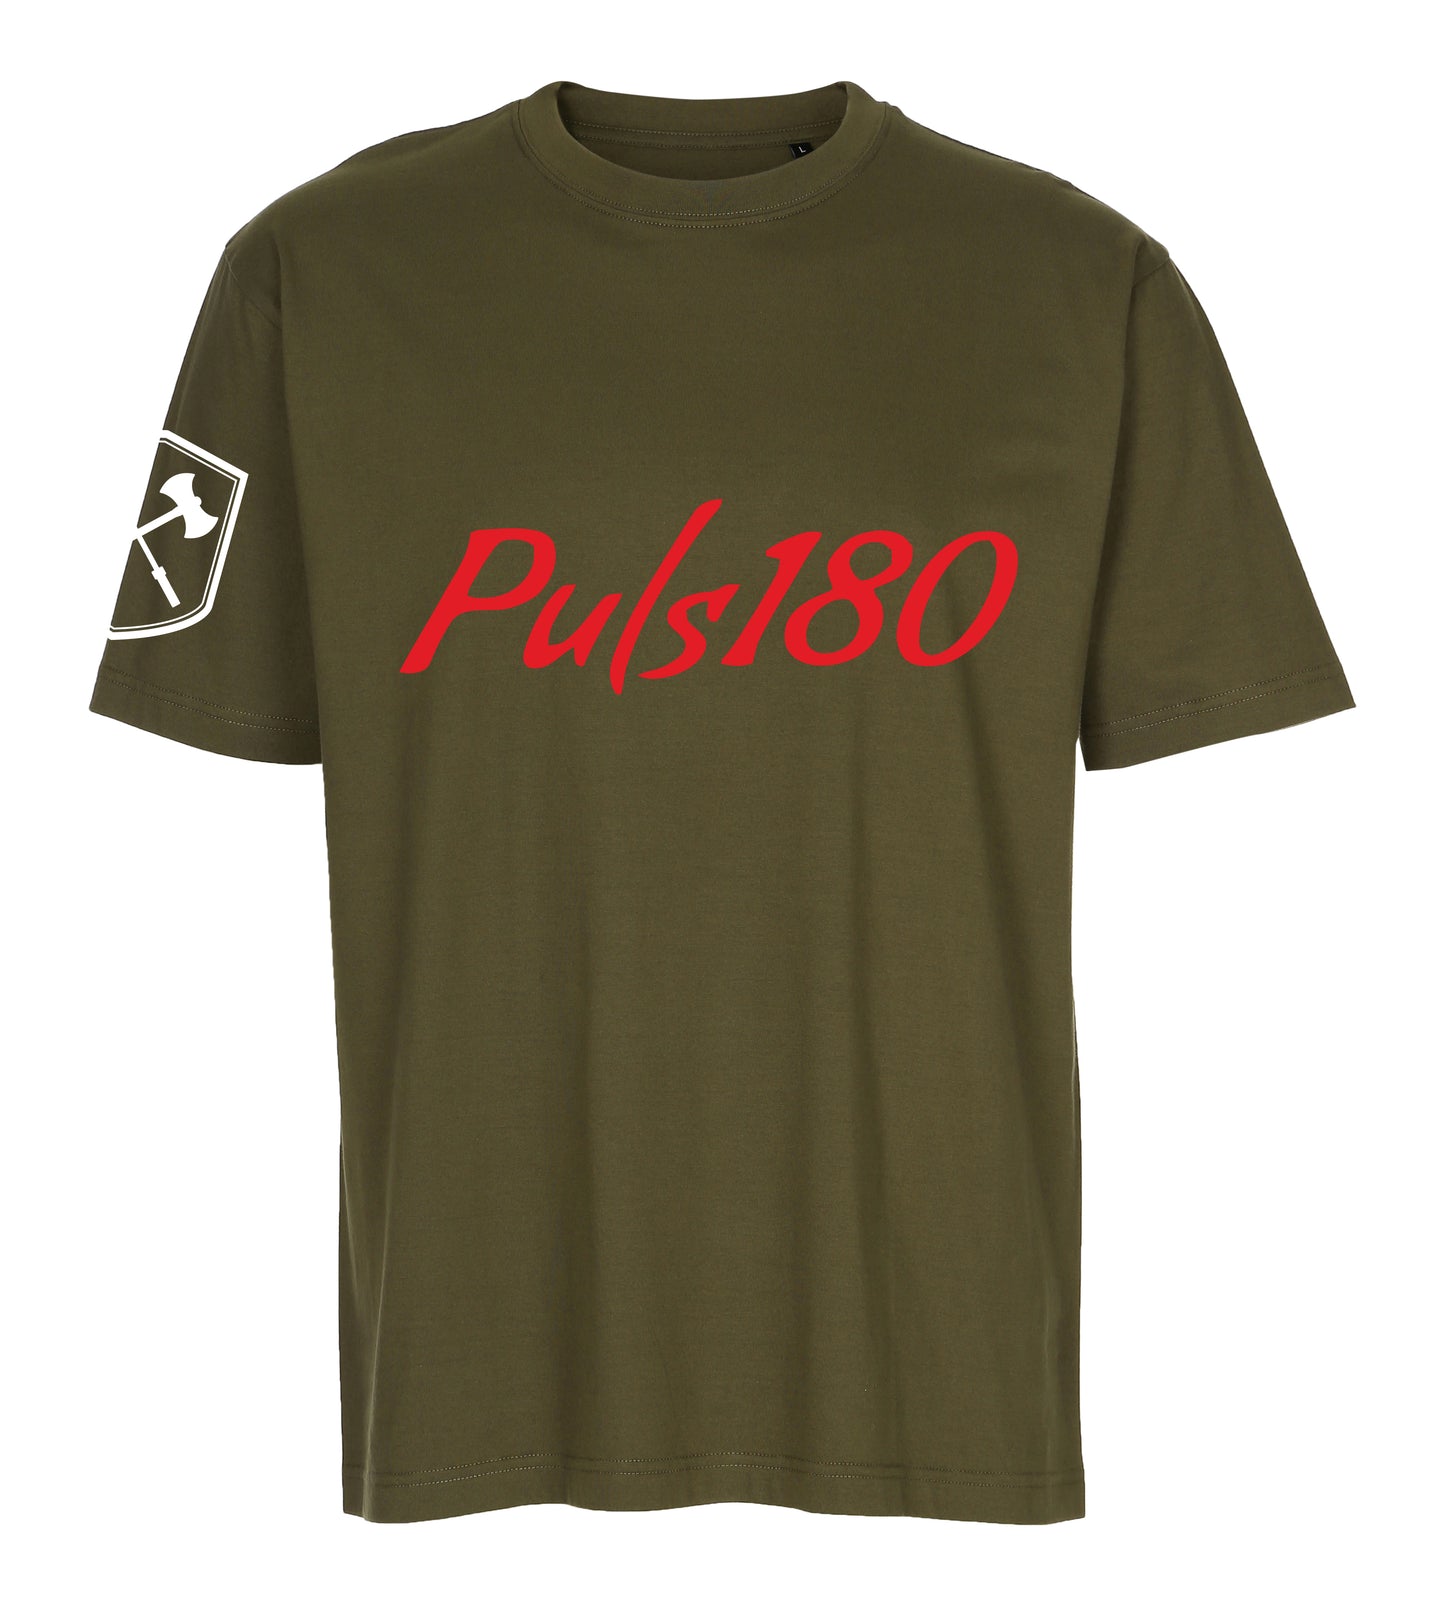 Puls180 - Herre T-shirt